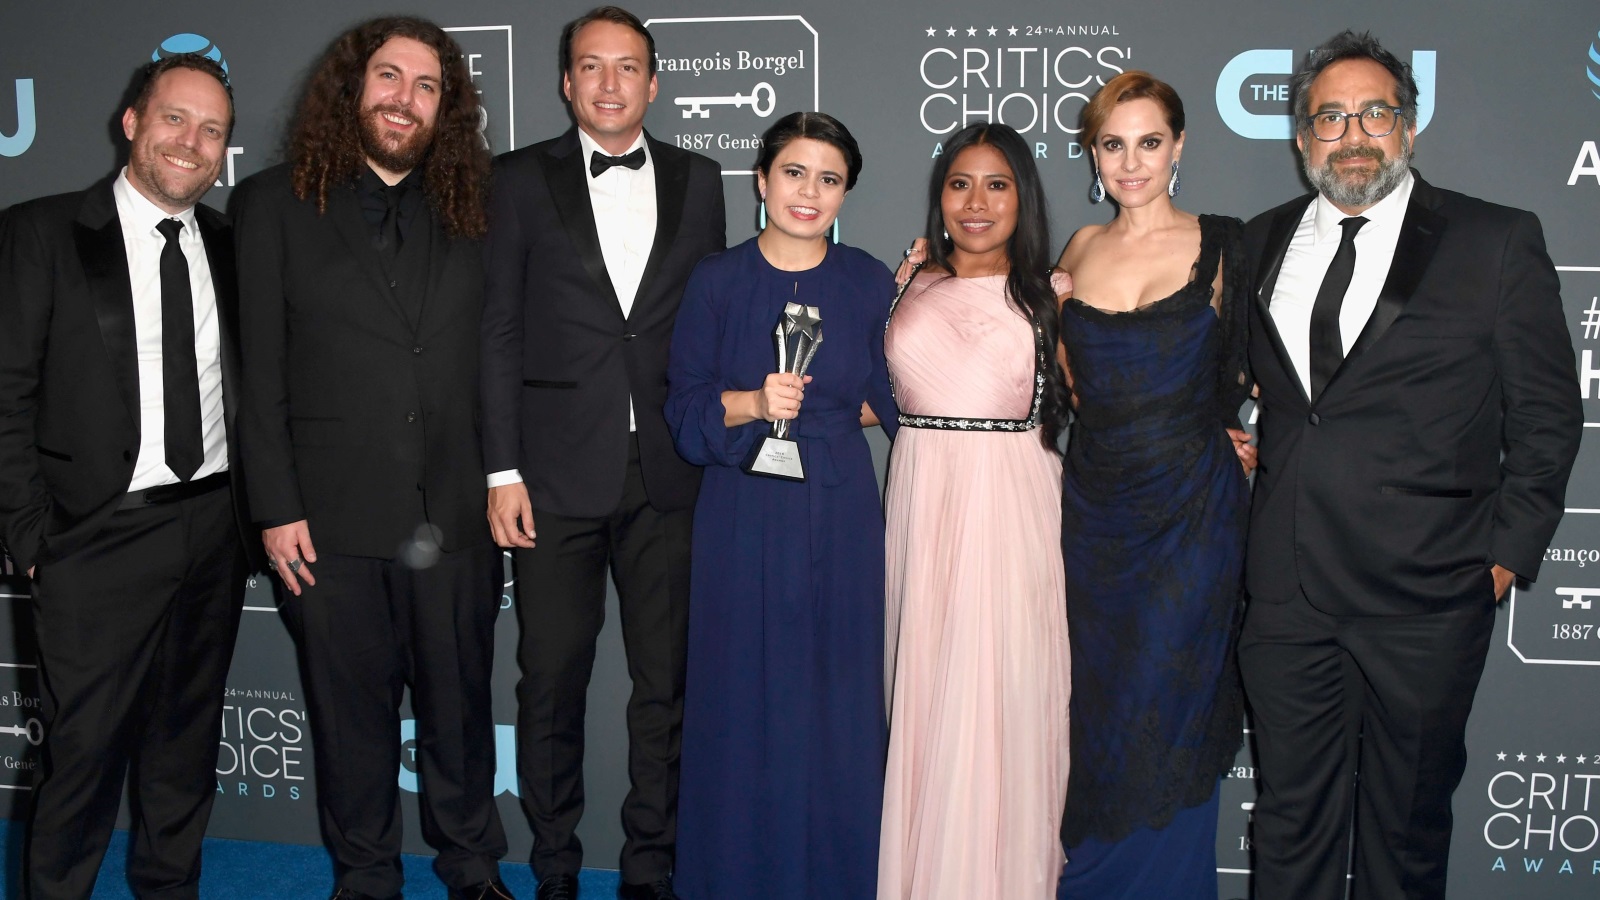 ‪طاقم فيلم روما للمخرج المكسيكي ألفونسو كوارون الذي حظي بعشرة ترشيحات في جوائز الأوسكار‬ (الفرنسية)